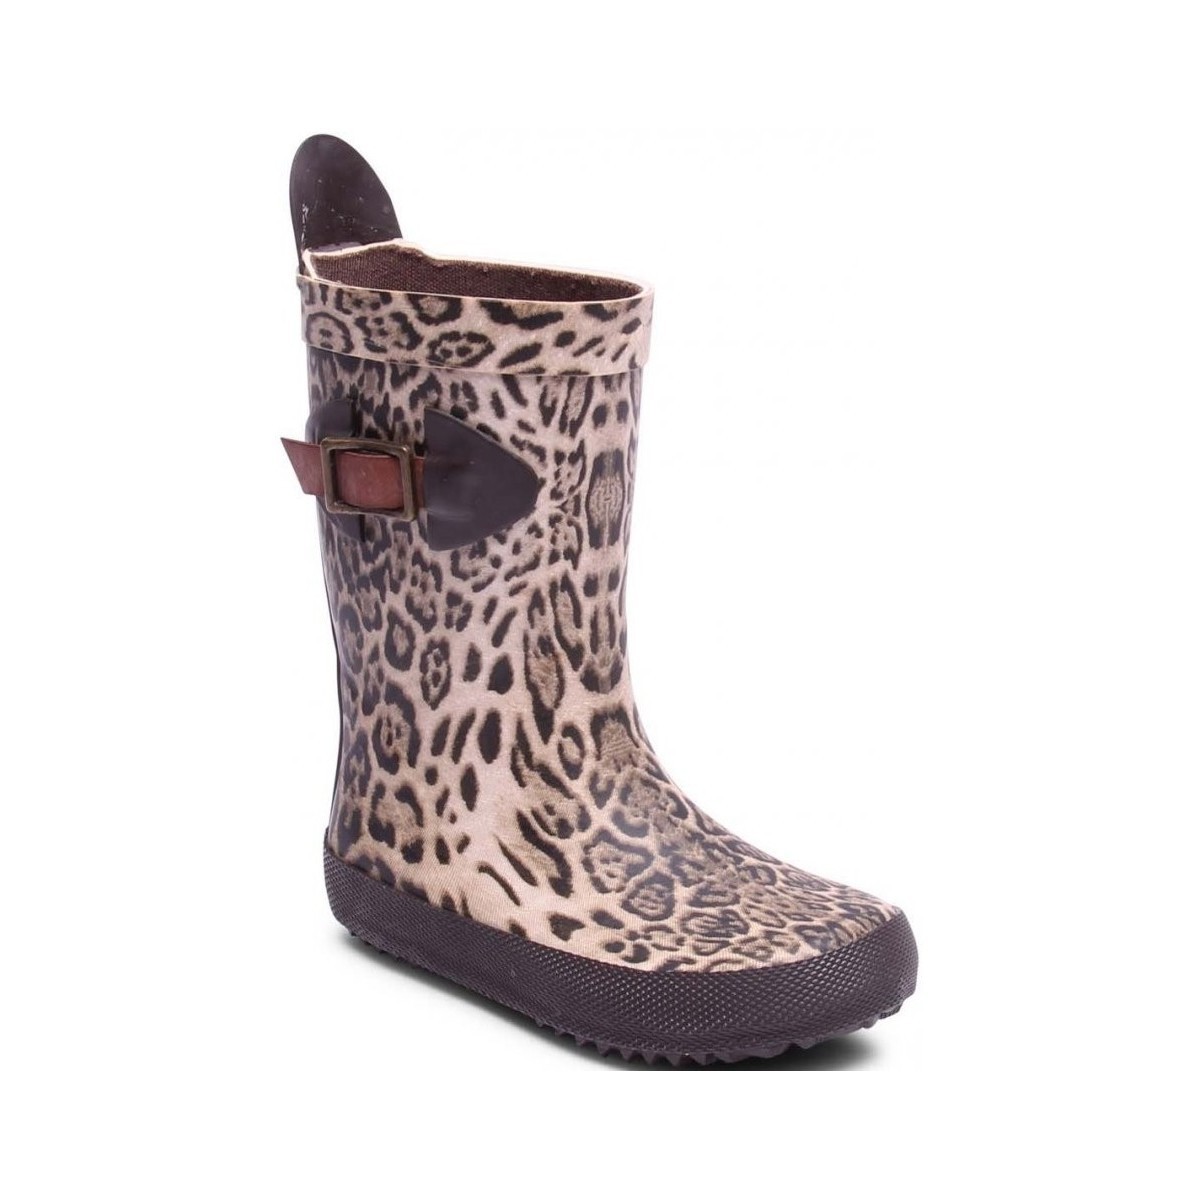 Chaussures Fille Bottes de pluie Bisgaard Scandinavia Leopard Autres